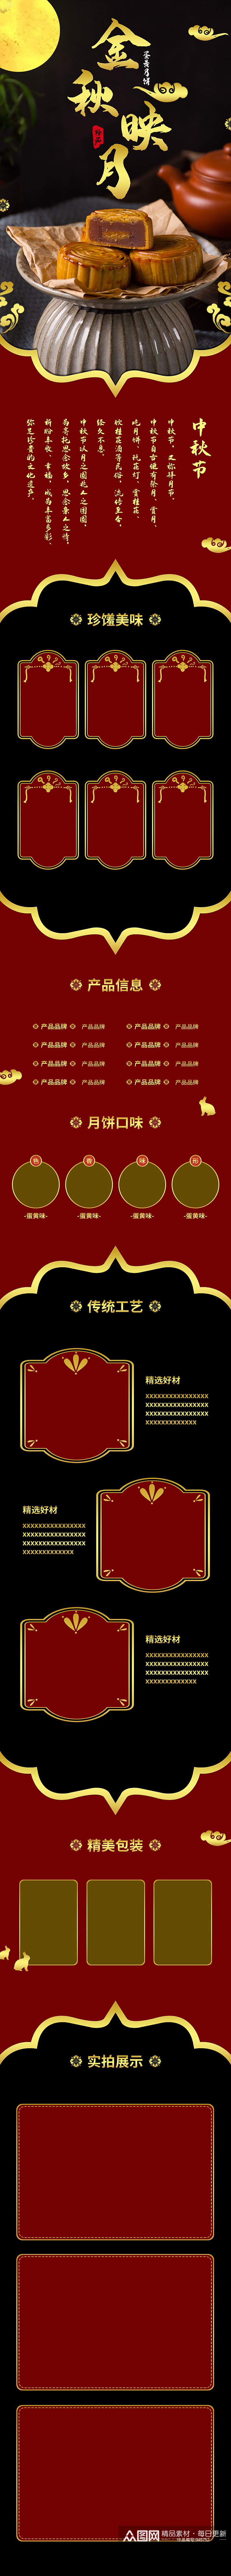 礼物品金色甜点食品中秋节日月饼中国风详情素材